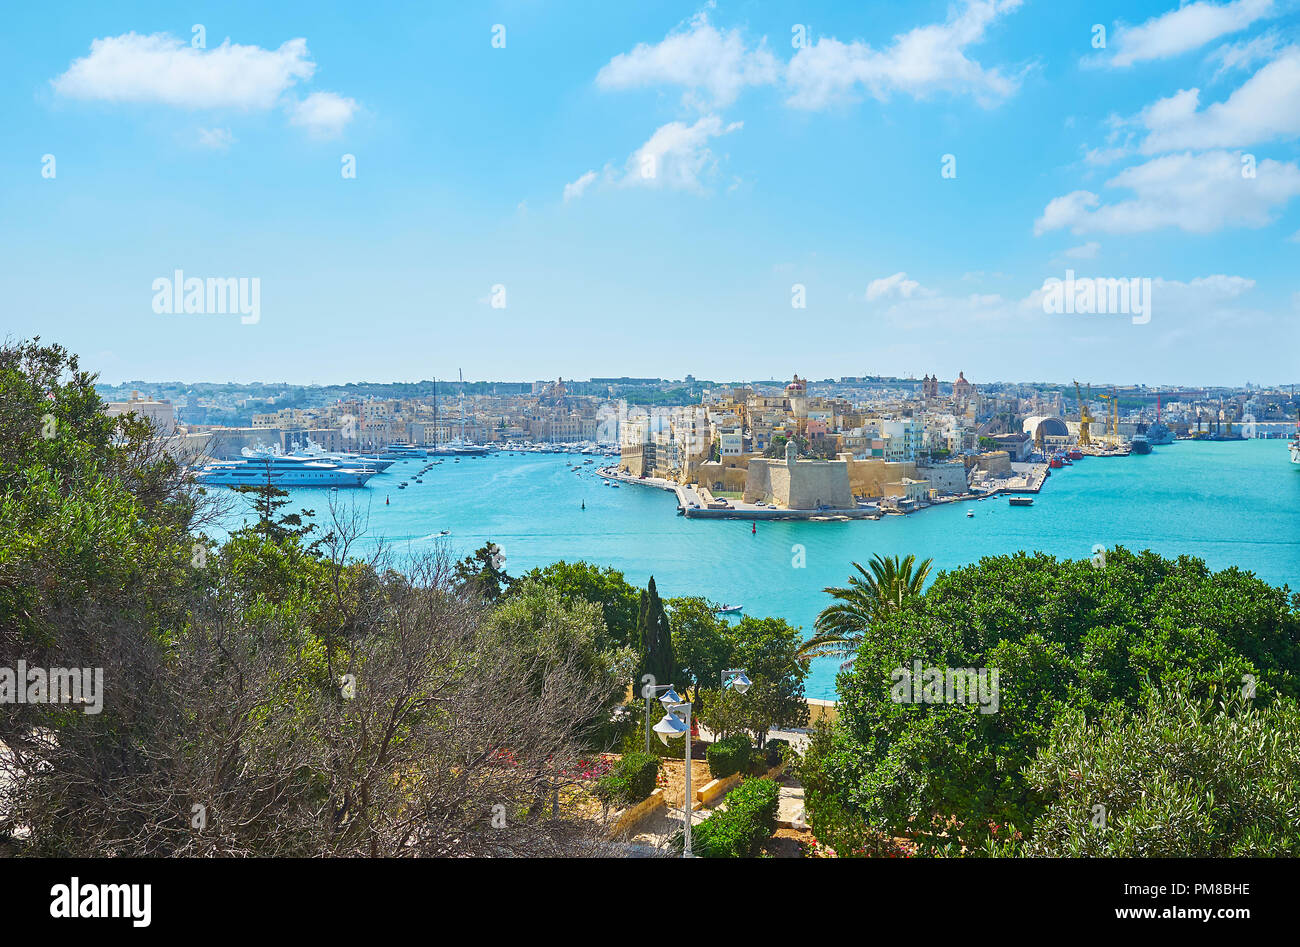 Godetevi la bellezza di Herbert Ganado giardini con la Valletta Grand Harbour e Senglea medievale (L-Isla) città sullo sfondo, Malta. Foto Stock